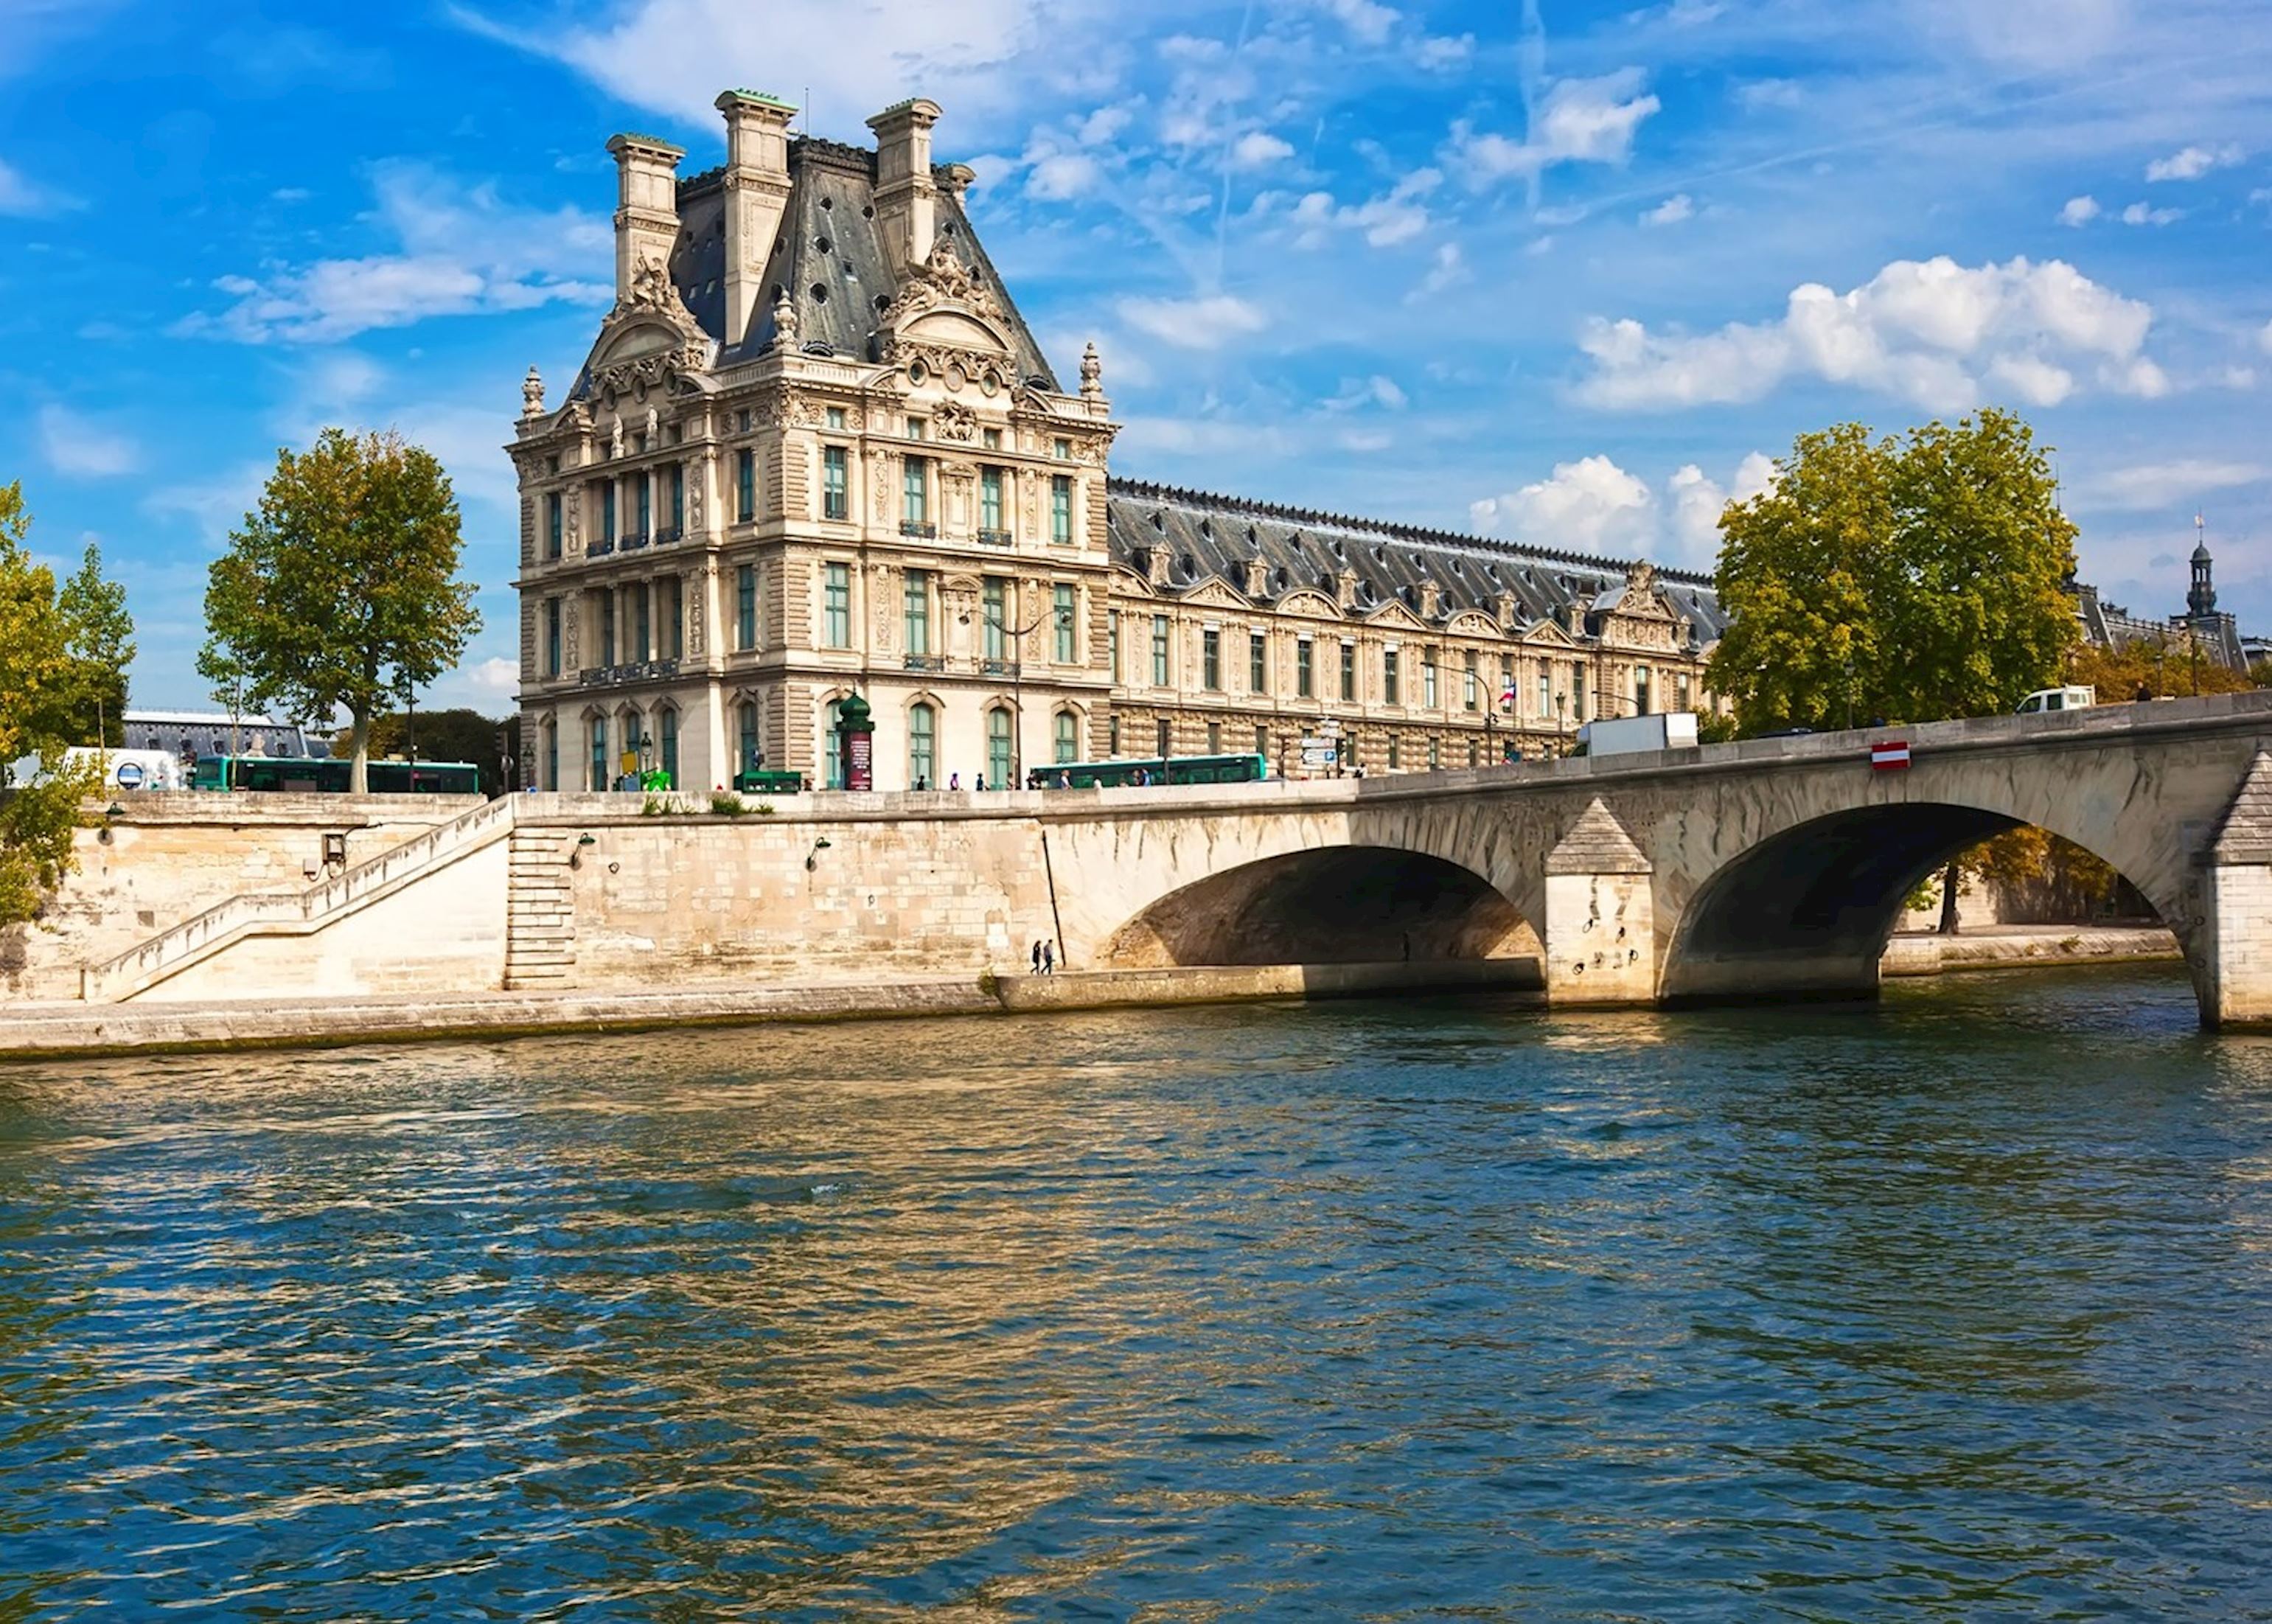 The Louvre, Musée d'Orsay, Musée du Quai Branly…: 5 Paris museums listed as  the best in France 